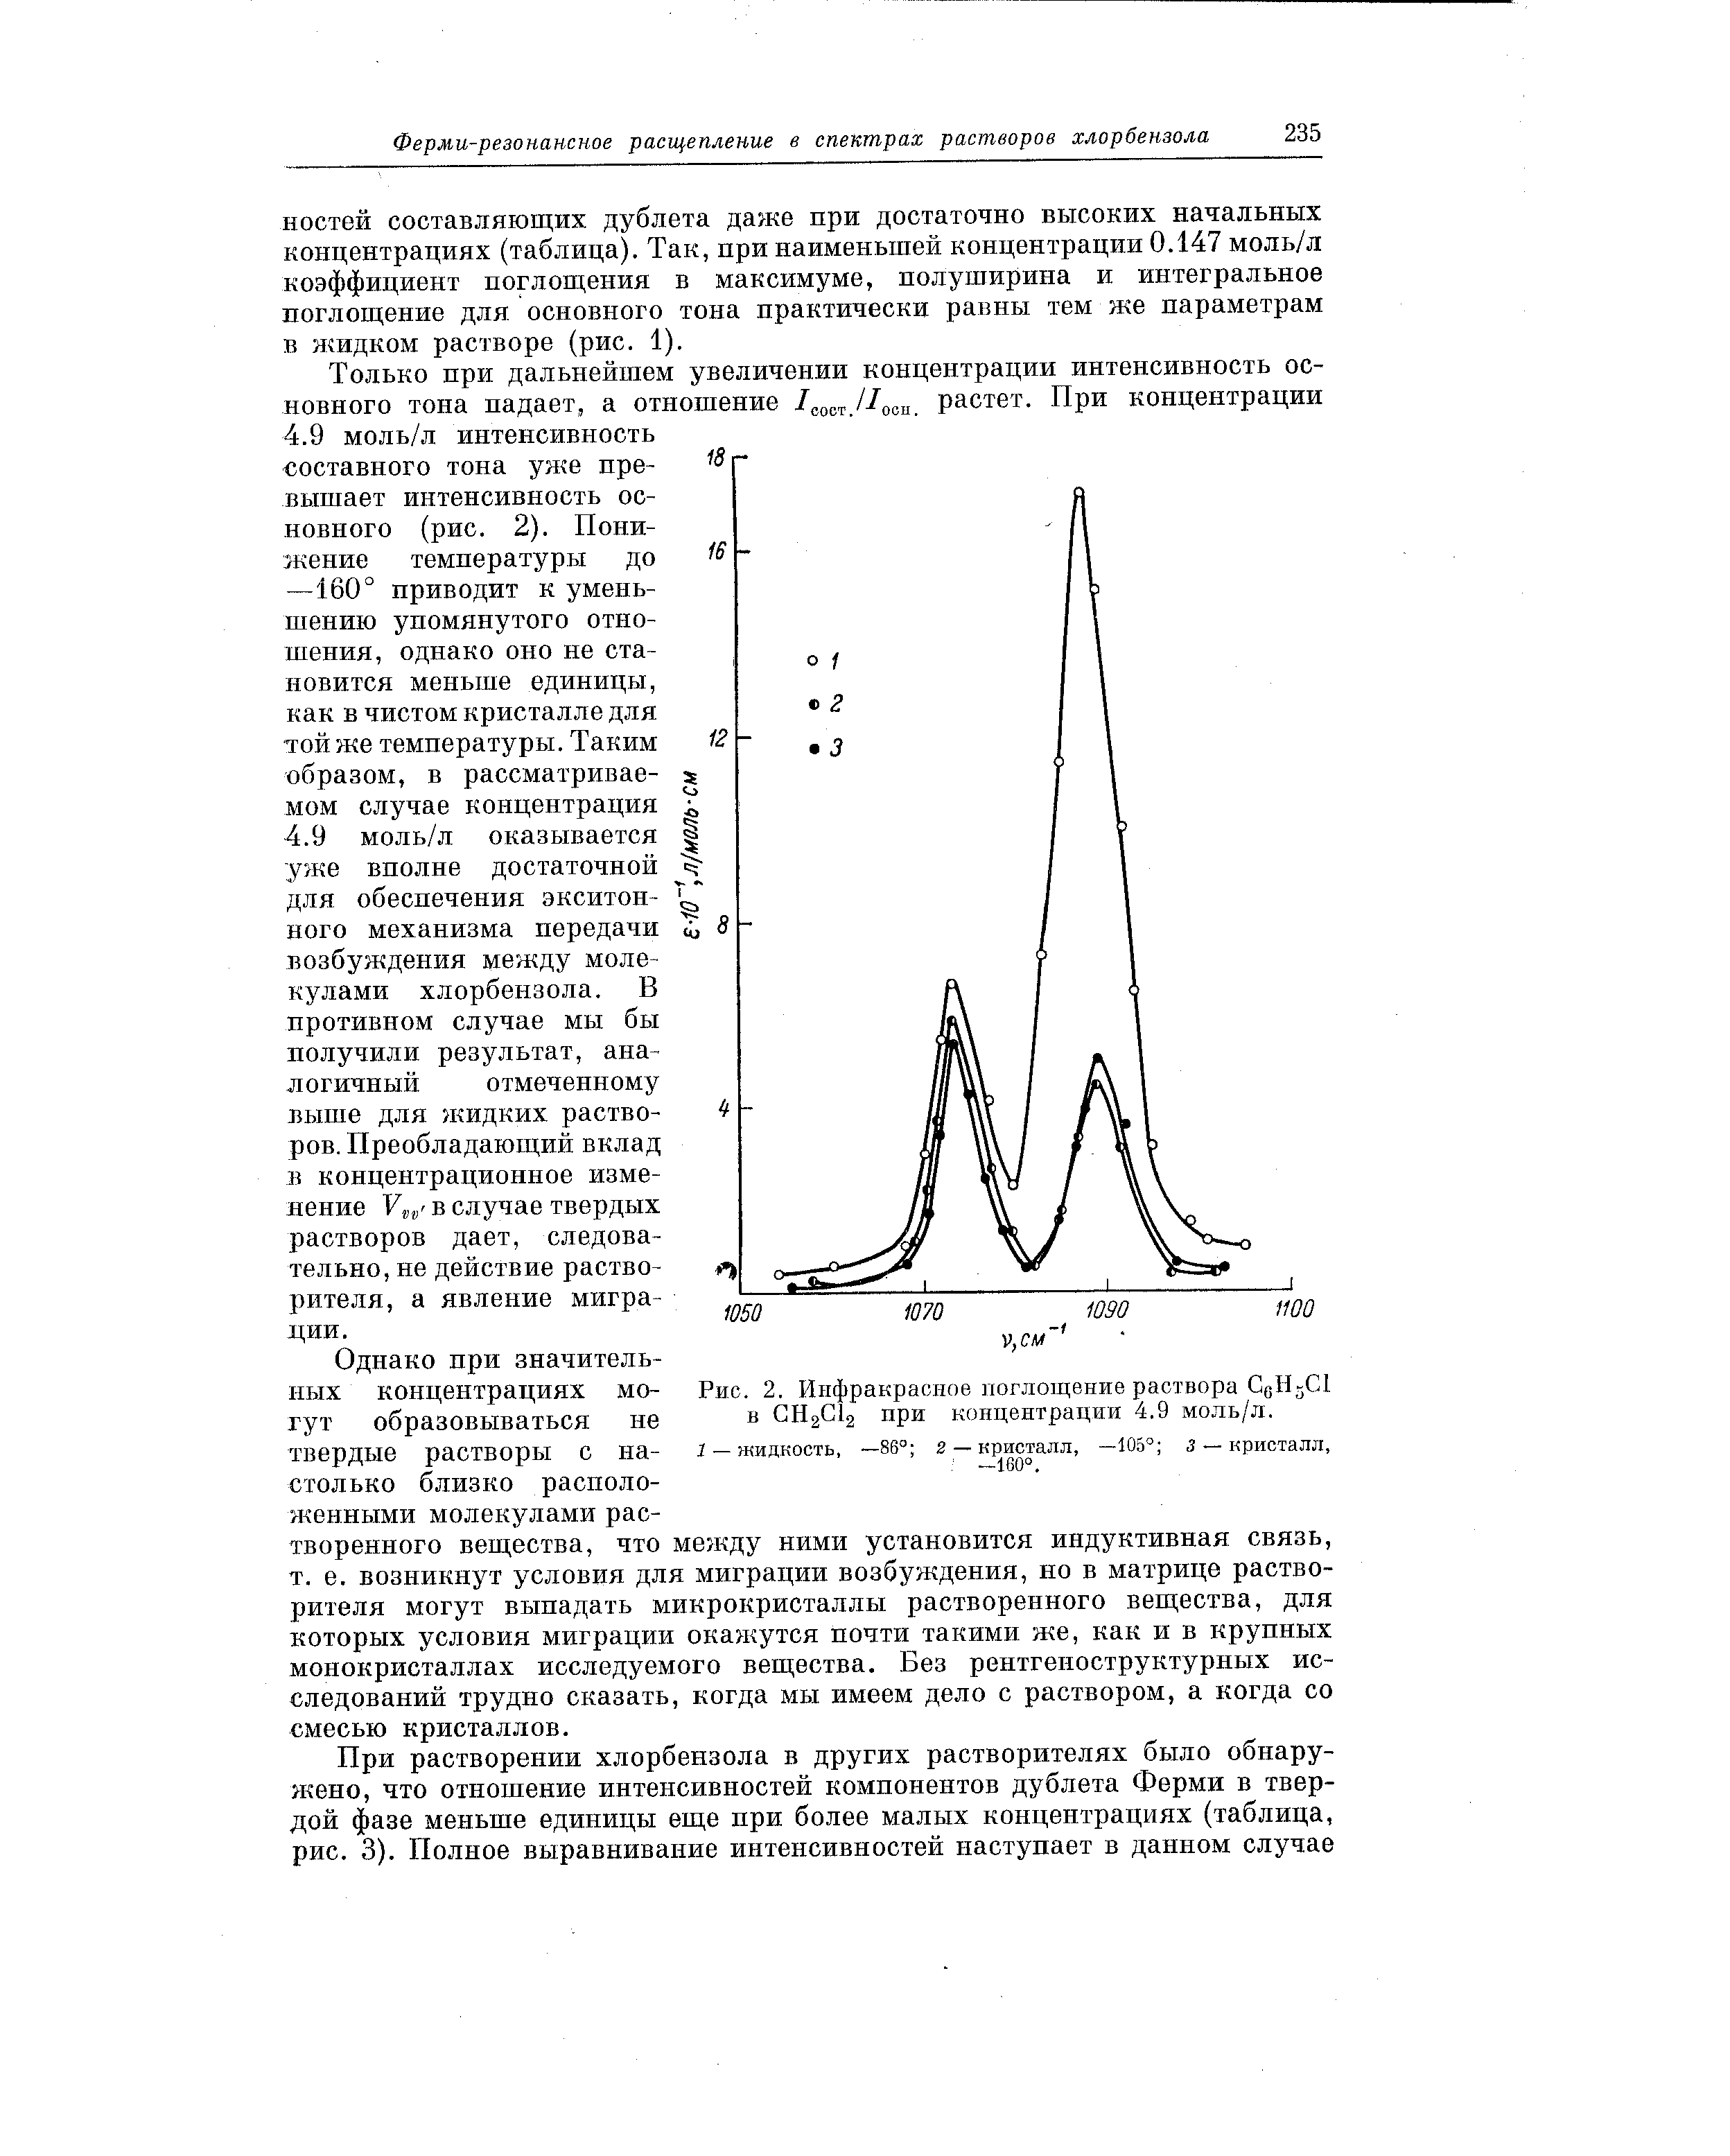 Рис. 2 Инфракрасное поглощение раствора С0Н3СЛ при концентрации 4.9 моль/л.
